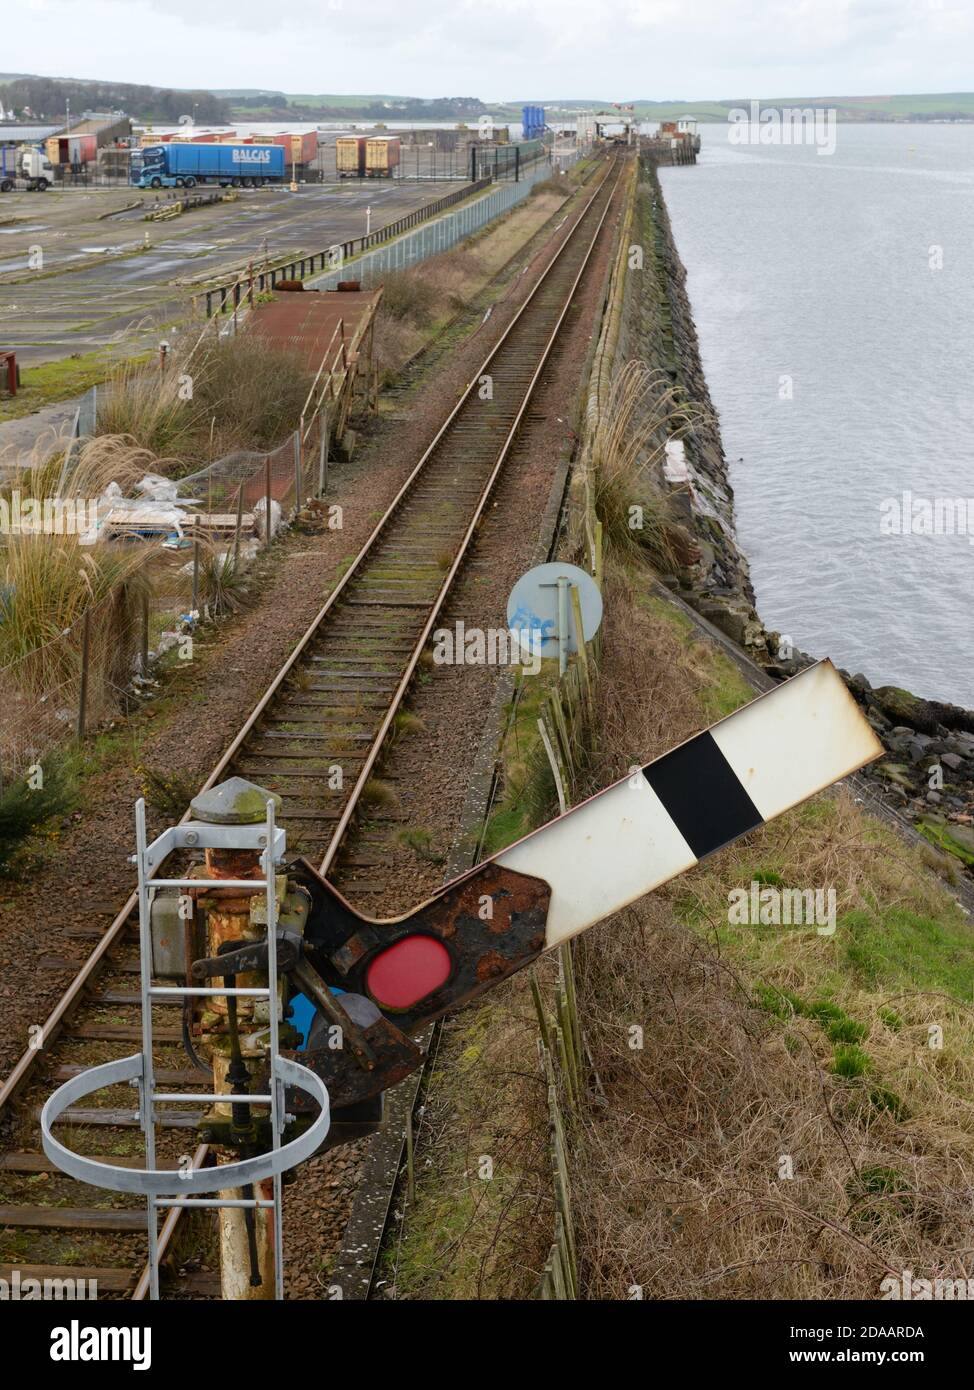 Der alte mechanische Signalarm der Eisenbahn in der angehobenen Position zeigt, dass die Weiterfahrt sicher ist. Stockfoto